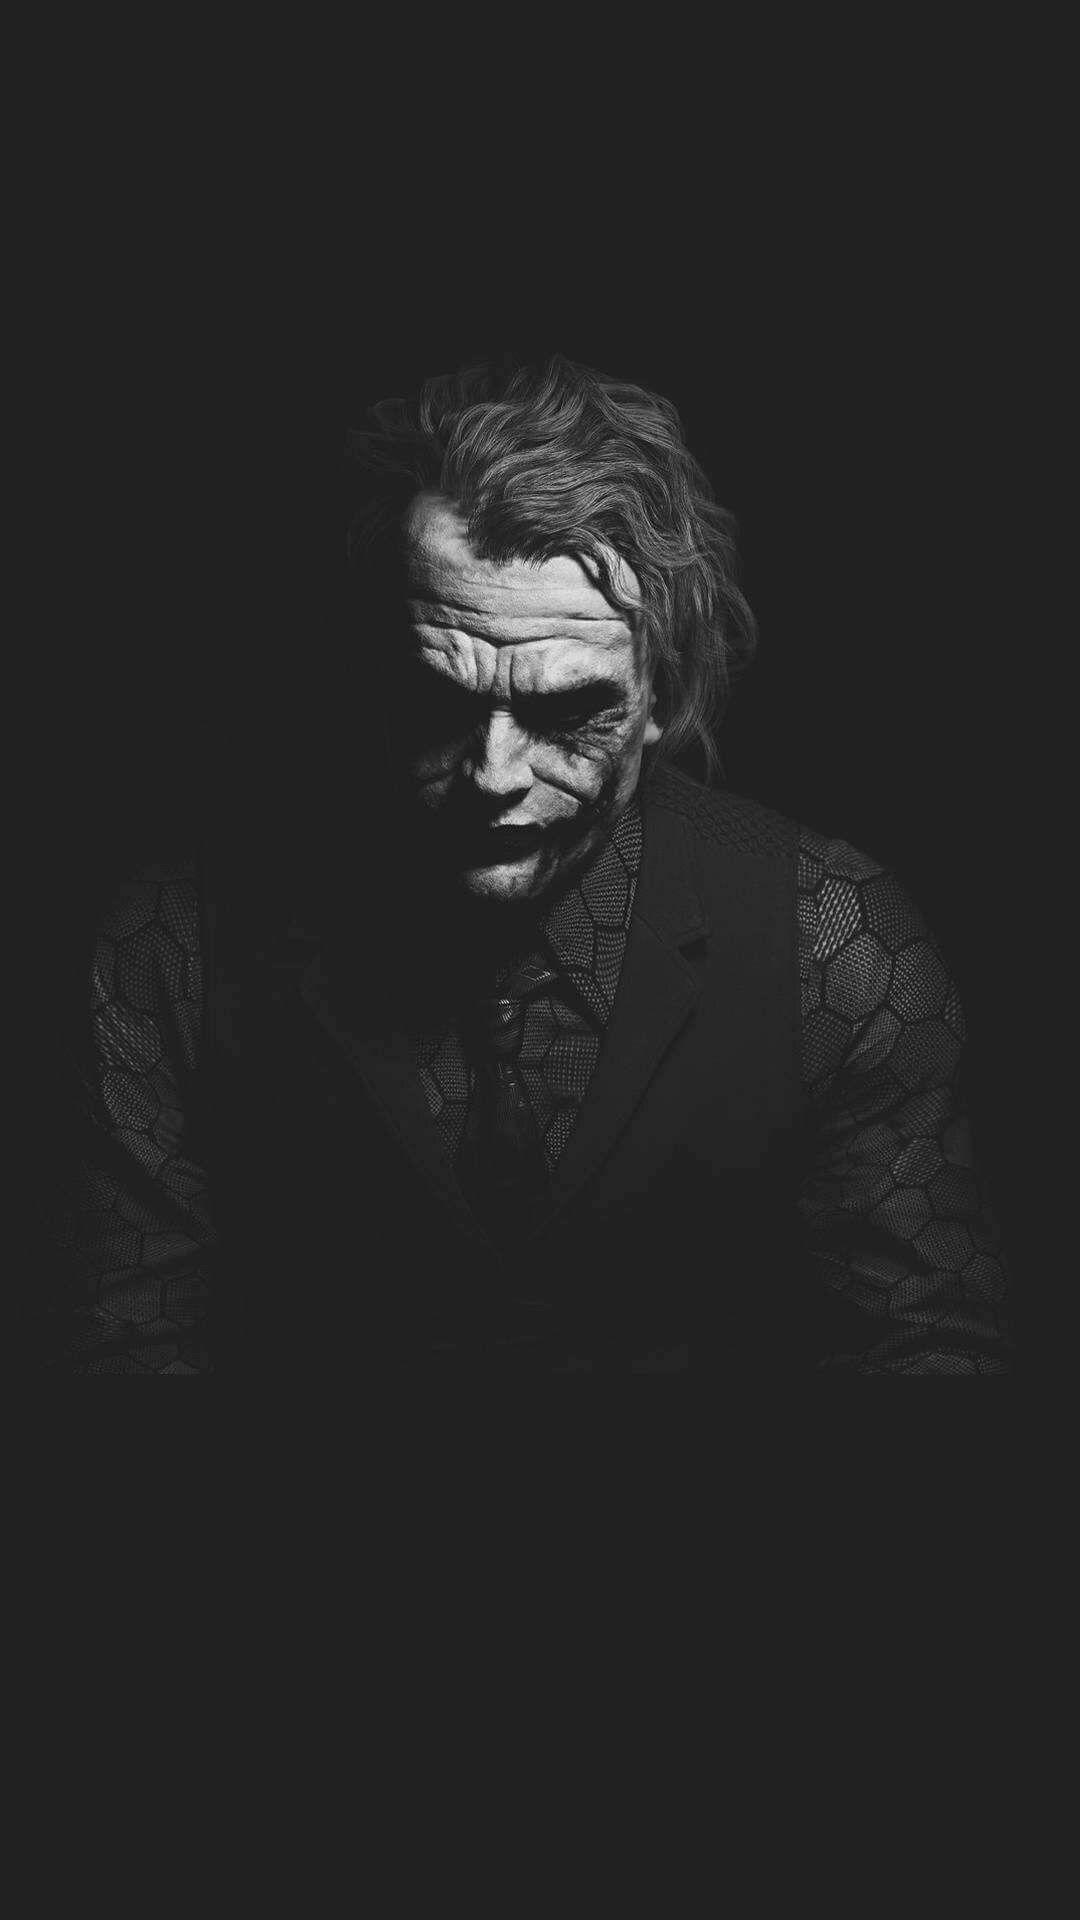 cine. Joker wallpaper, Joker pics